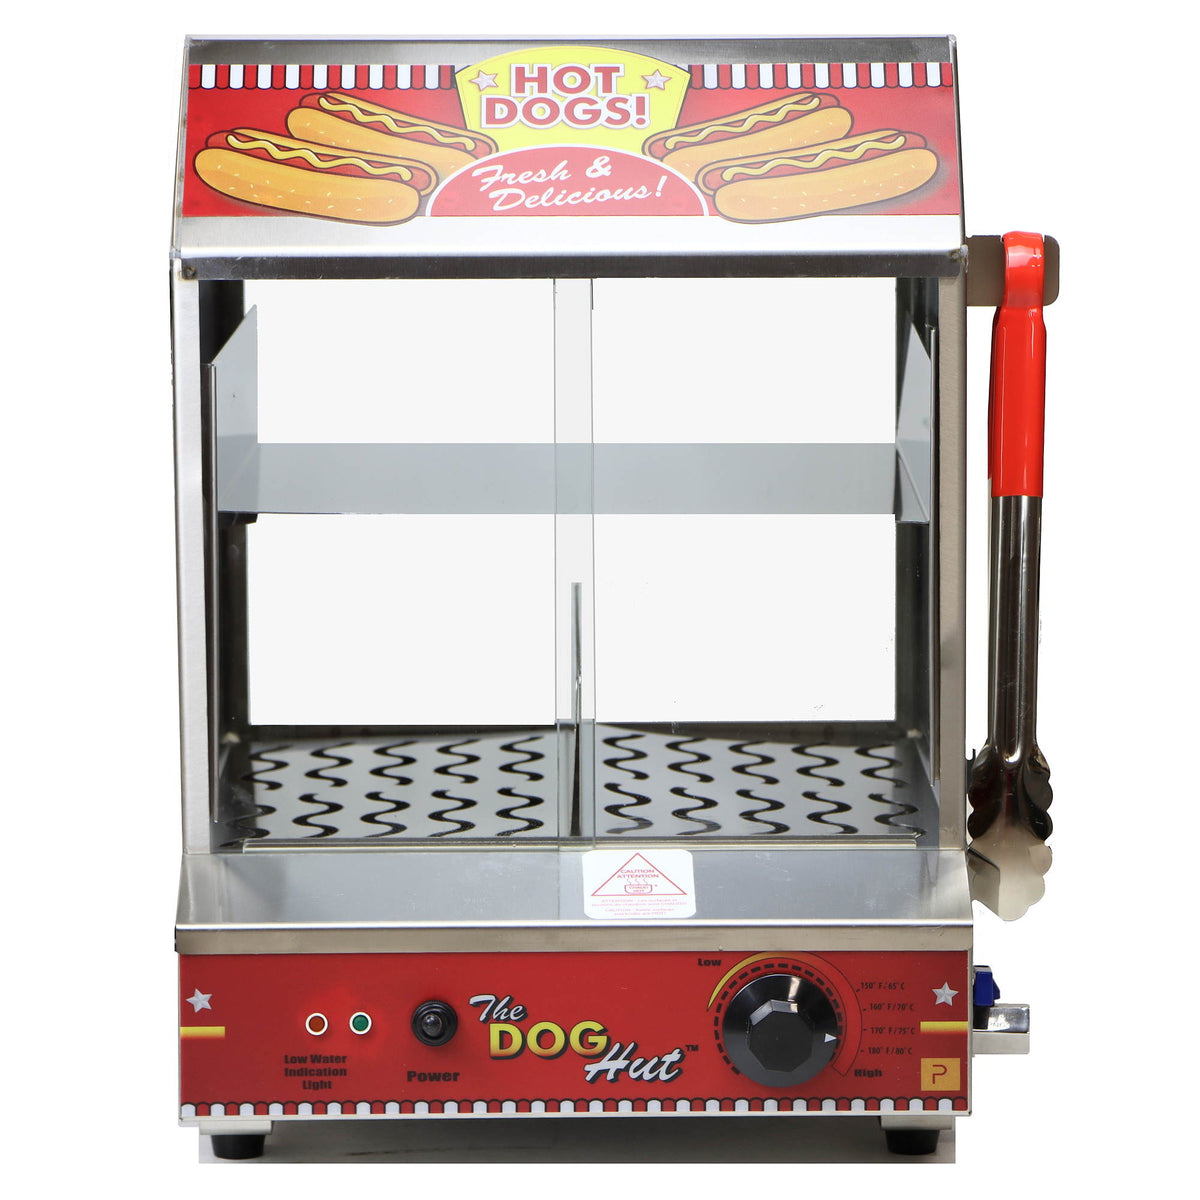 Hot dog steamer rentals Framingham / Hudson MA  Rent hot dog steamer in  Hudson Massachusetts, Framingham, MetroWest, Middlesex County